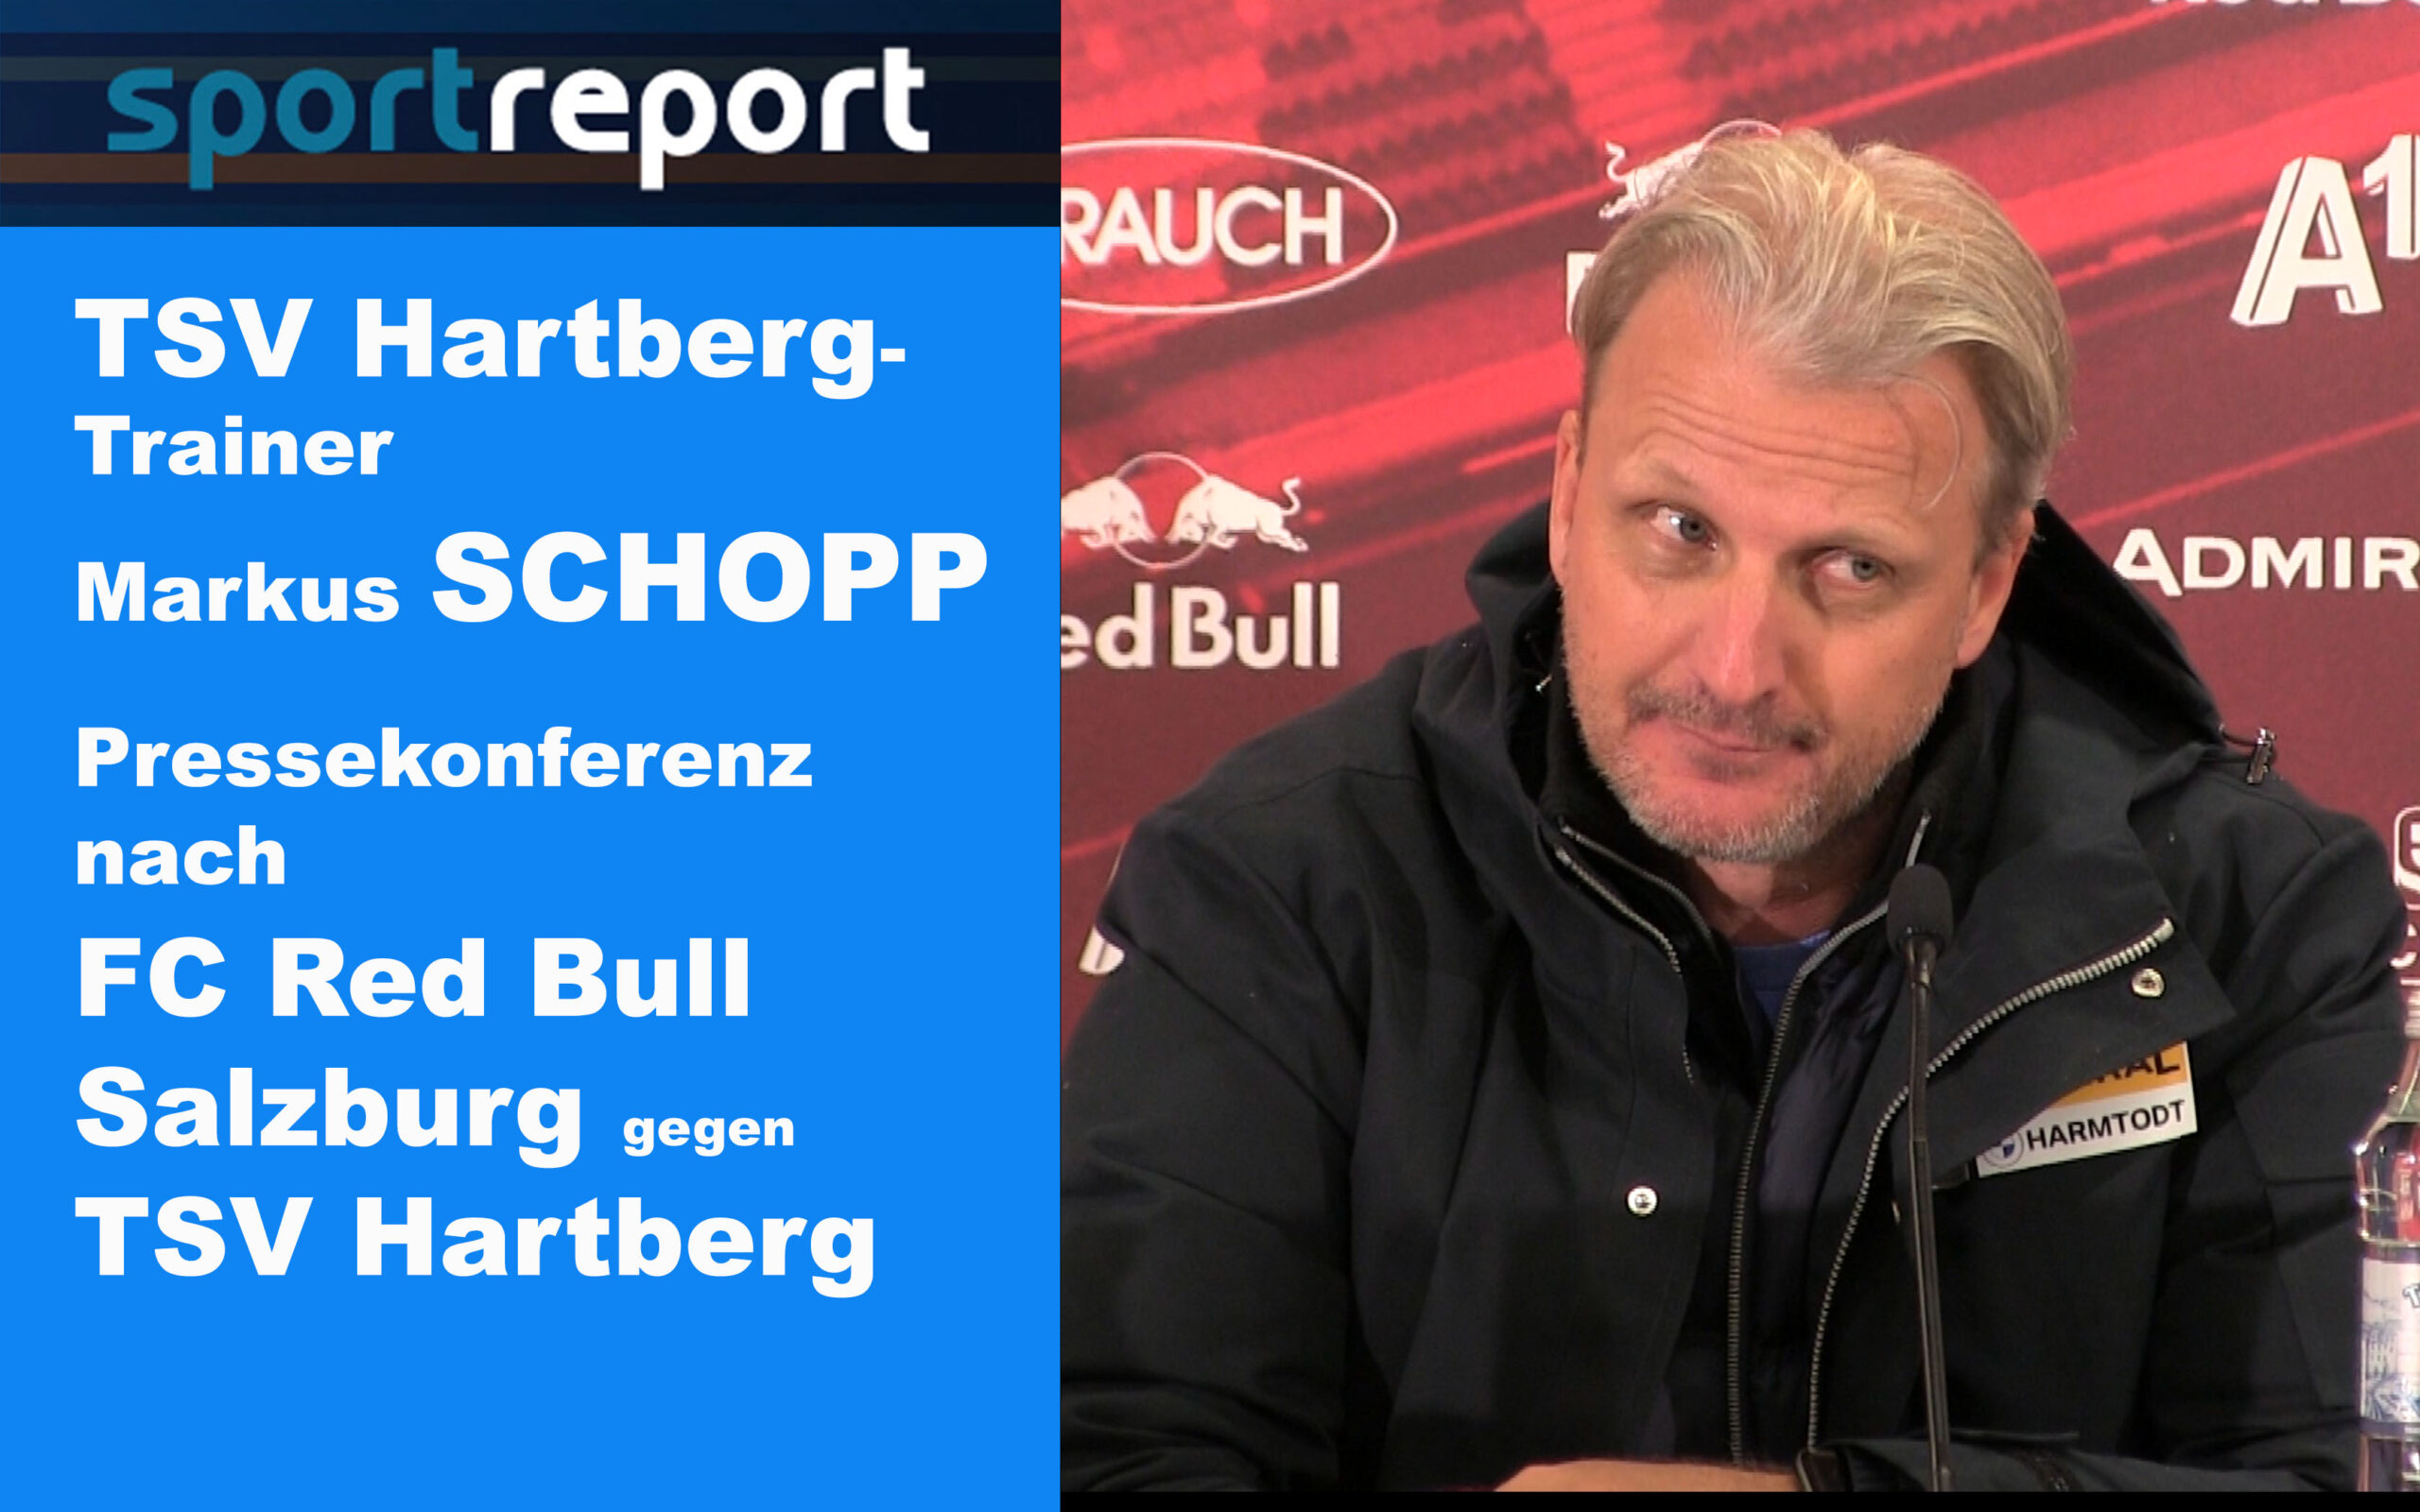 Video: Markus Schopp (Trainer TSV Hartberg) - die Pressekonferenz nach dem Spiel gegen FC Red Bull Salzburg